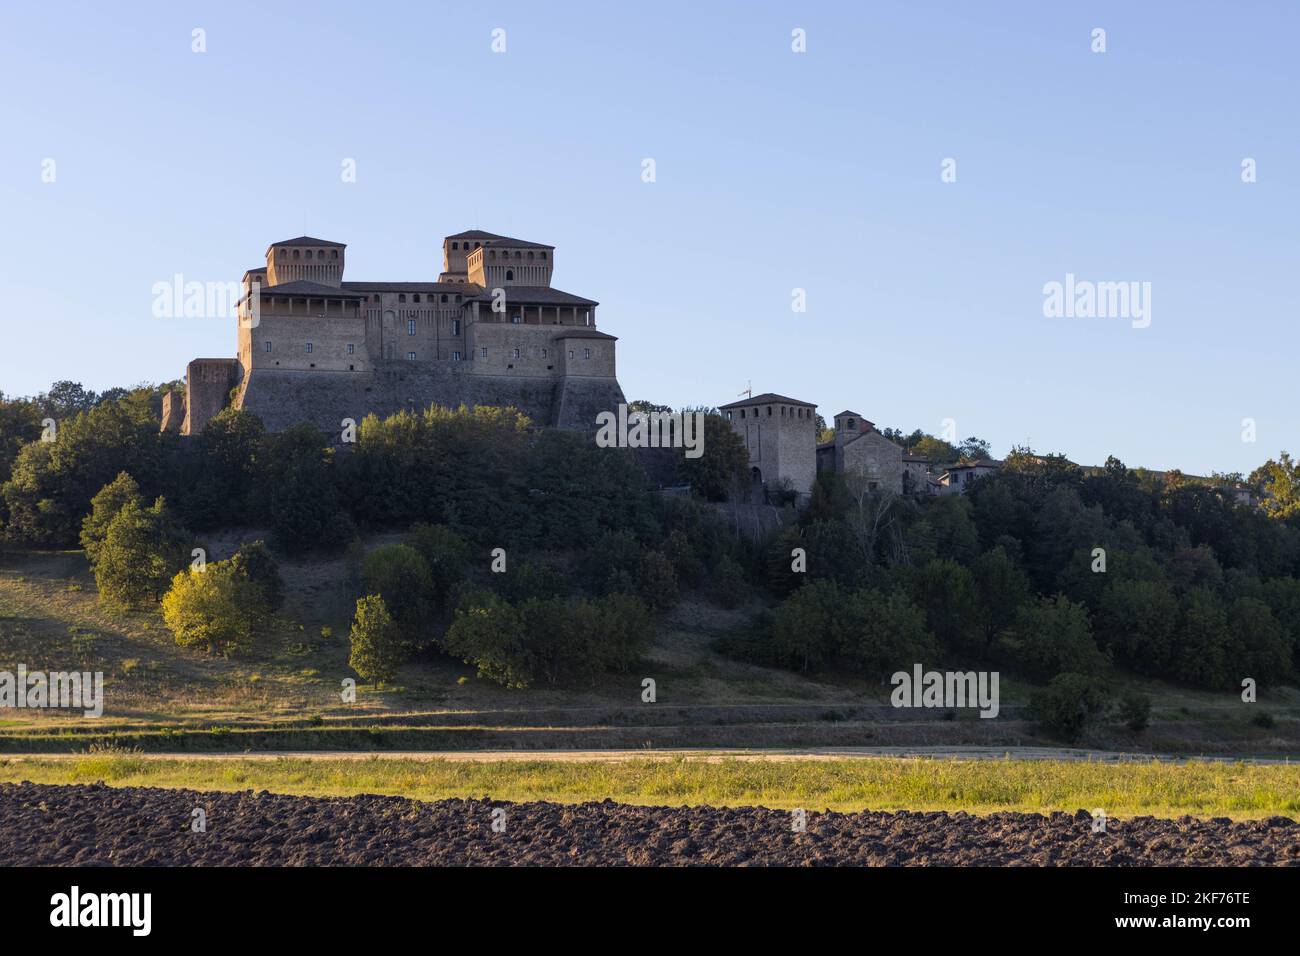 Vue sur le château de Torrechiara, province de Parme, Italie. Photo de haute qualité Banque D'Images